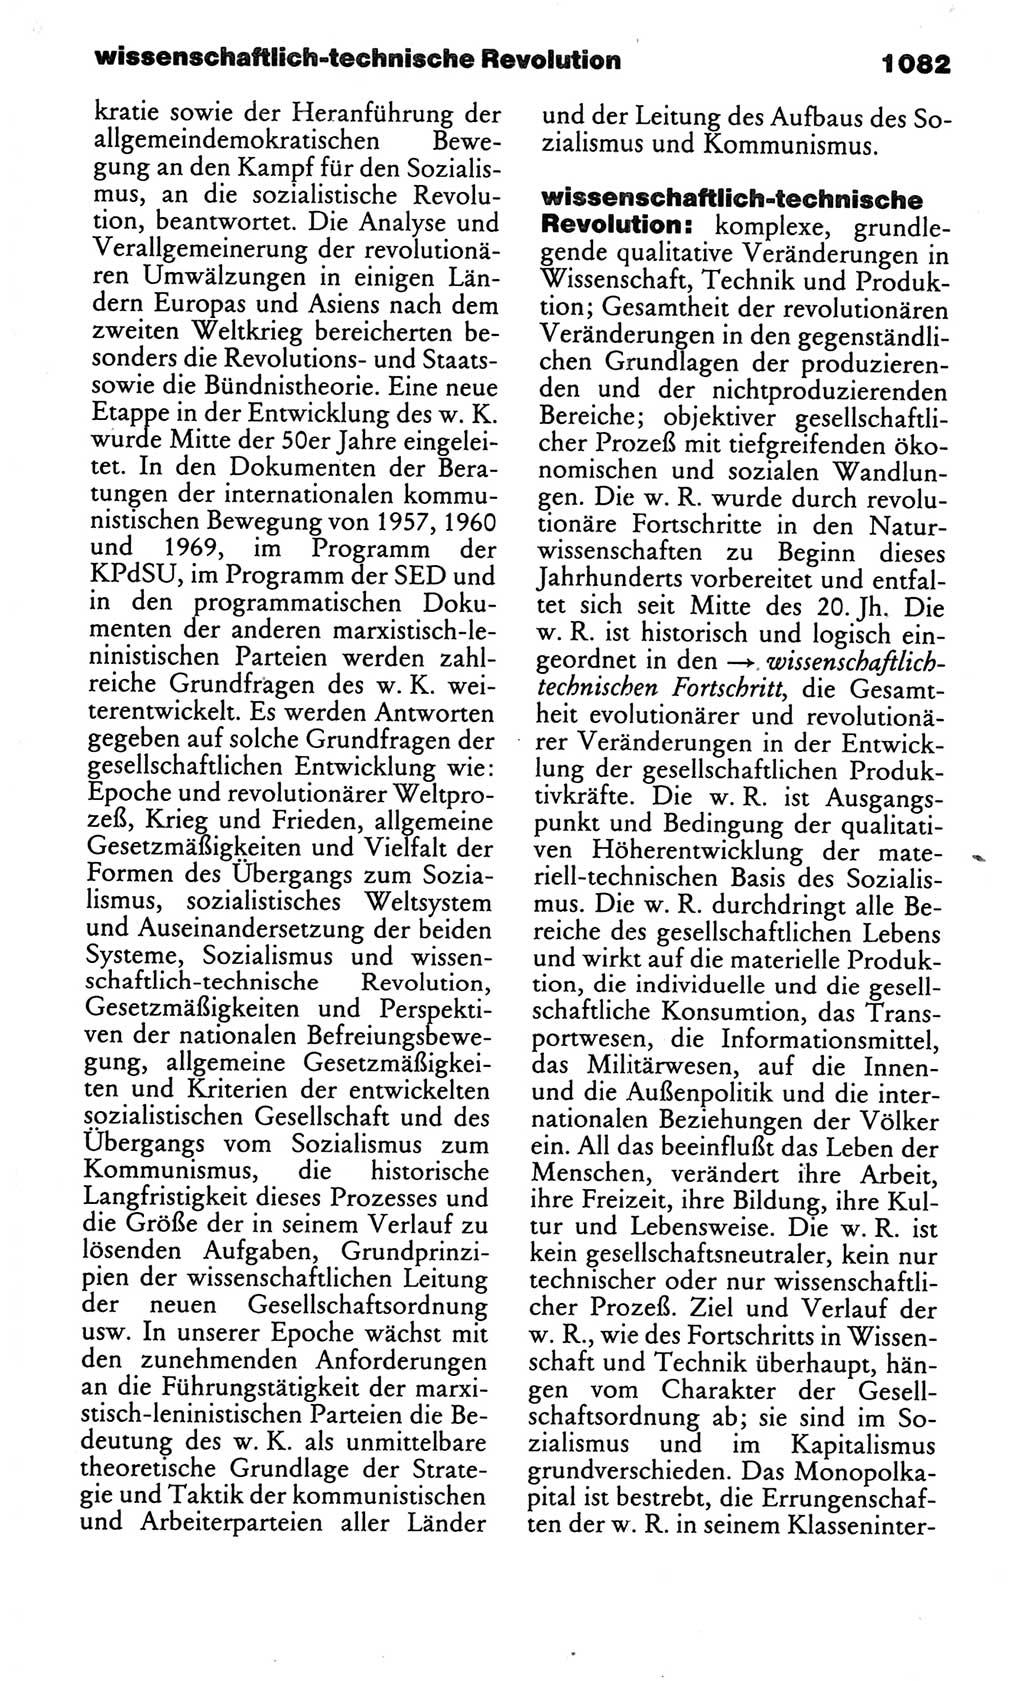 Kleines politisches Wörterbuch [Deutsche Demokratische Republik (DDR)] 1986, Seite 1082 (Kl. pol. Wb. DDR 1986, S. 1082)